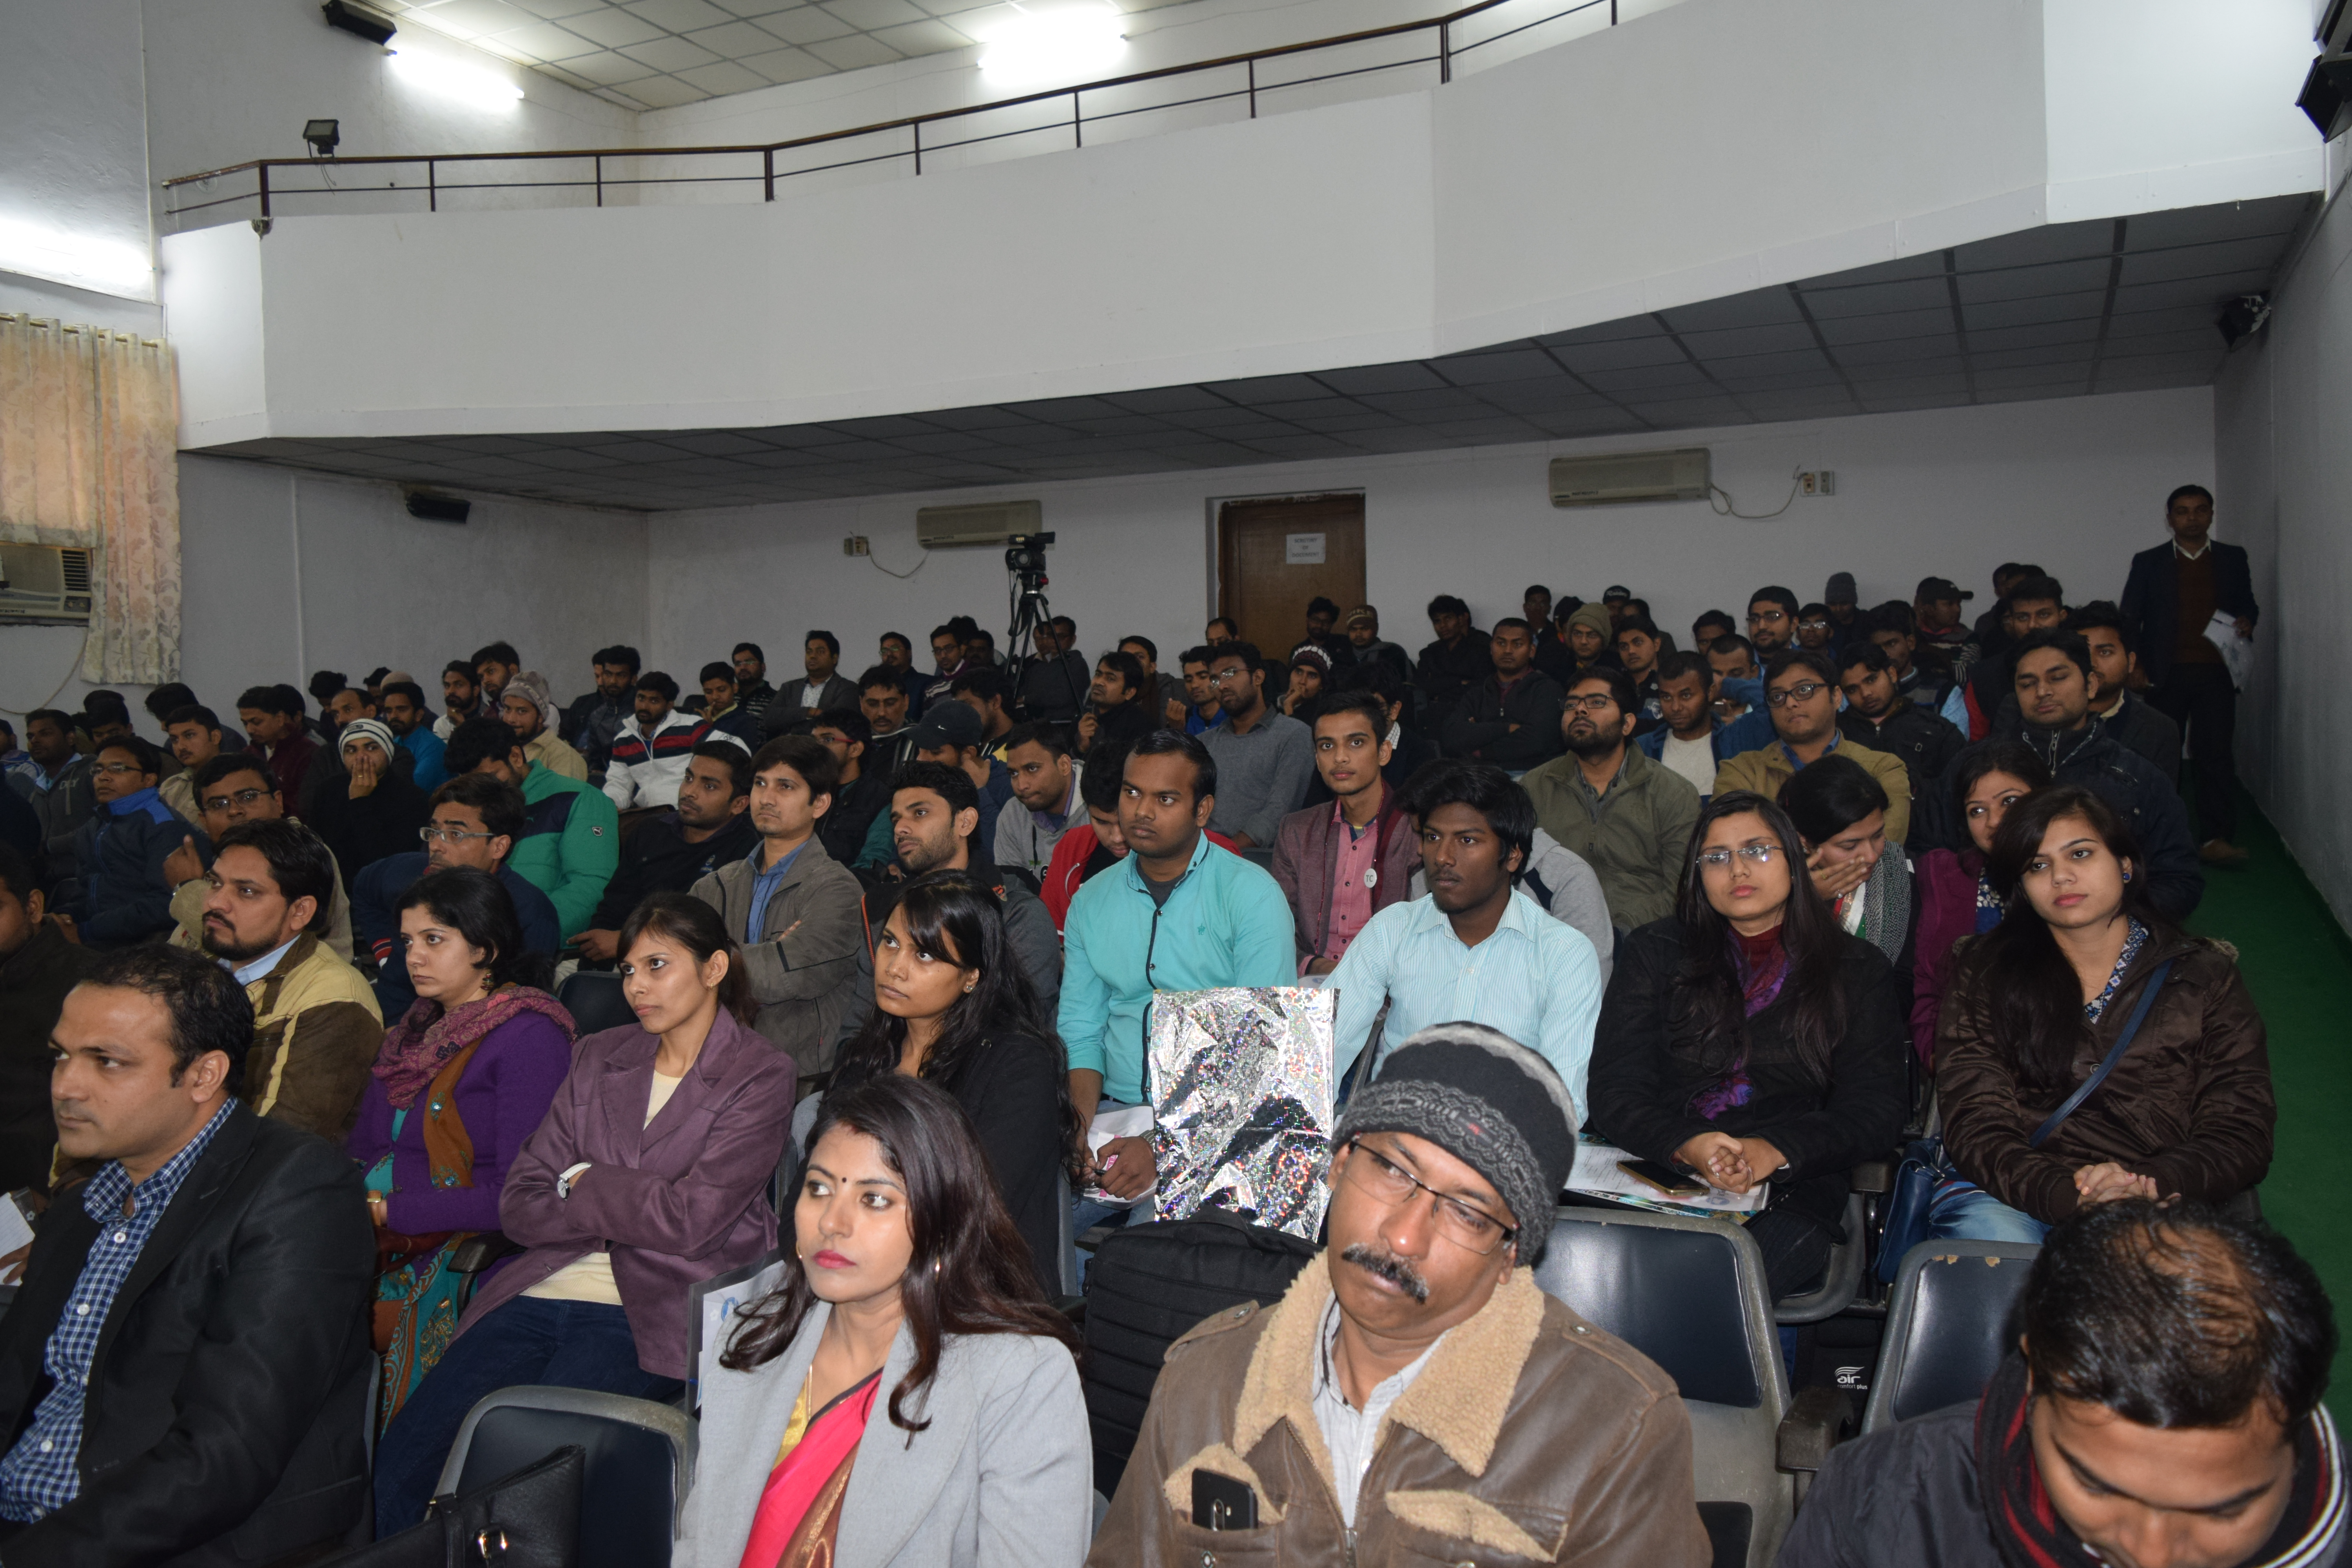 Thinking Social Seminar (Patna)